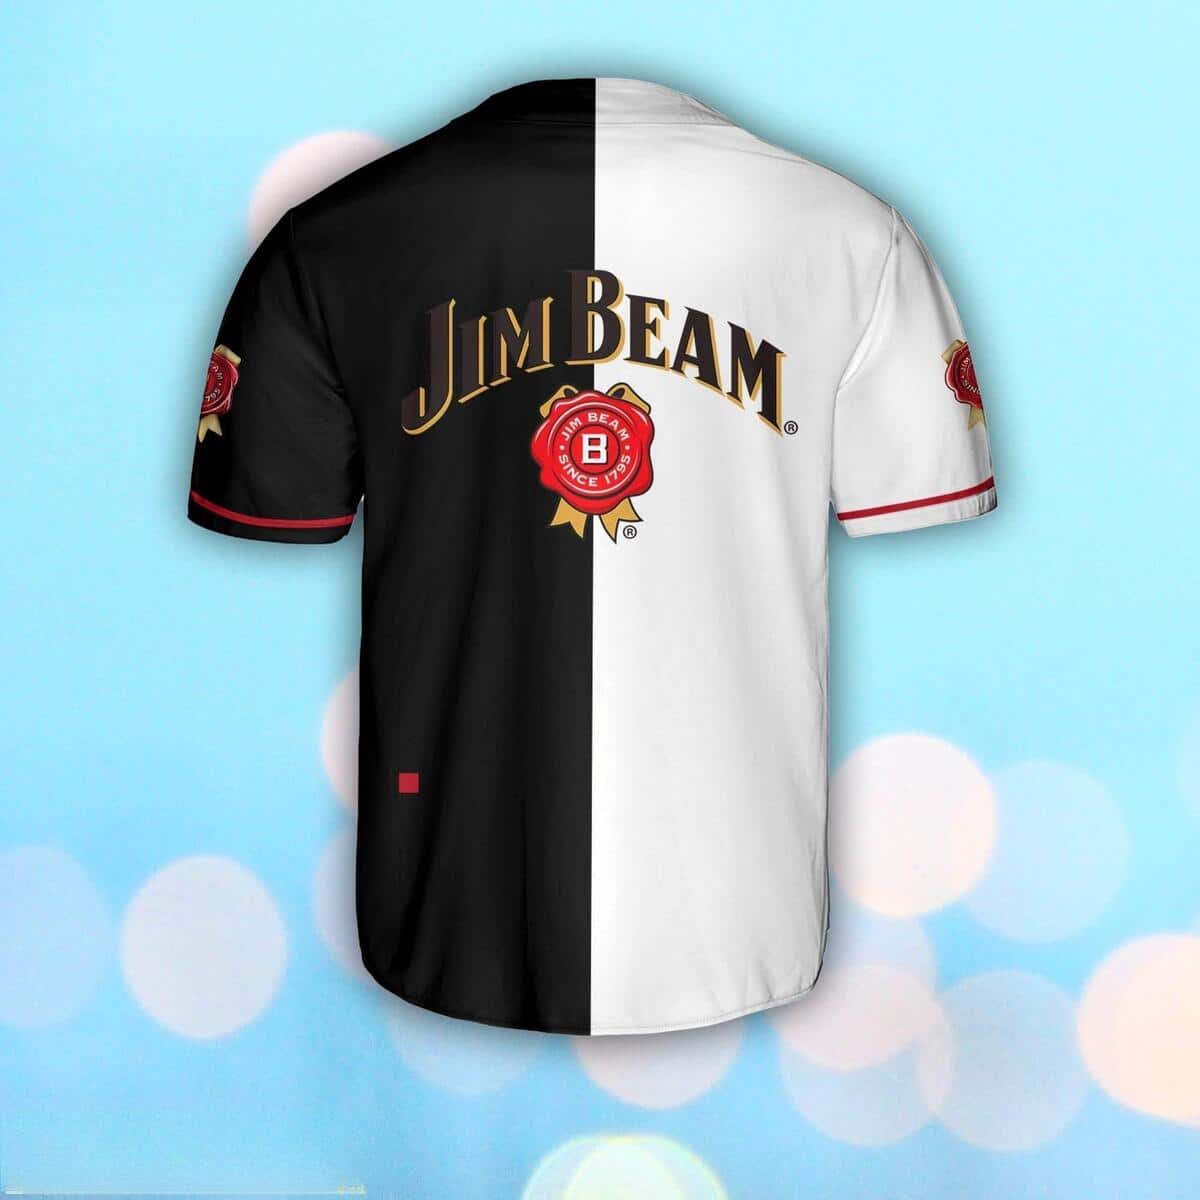 Jim Beam Baseball Jersey Black And White Split Gift For Whiskey Lovers